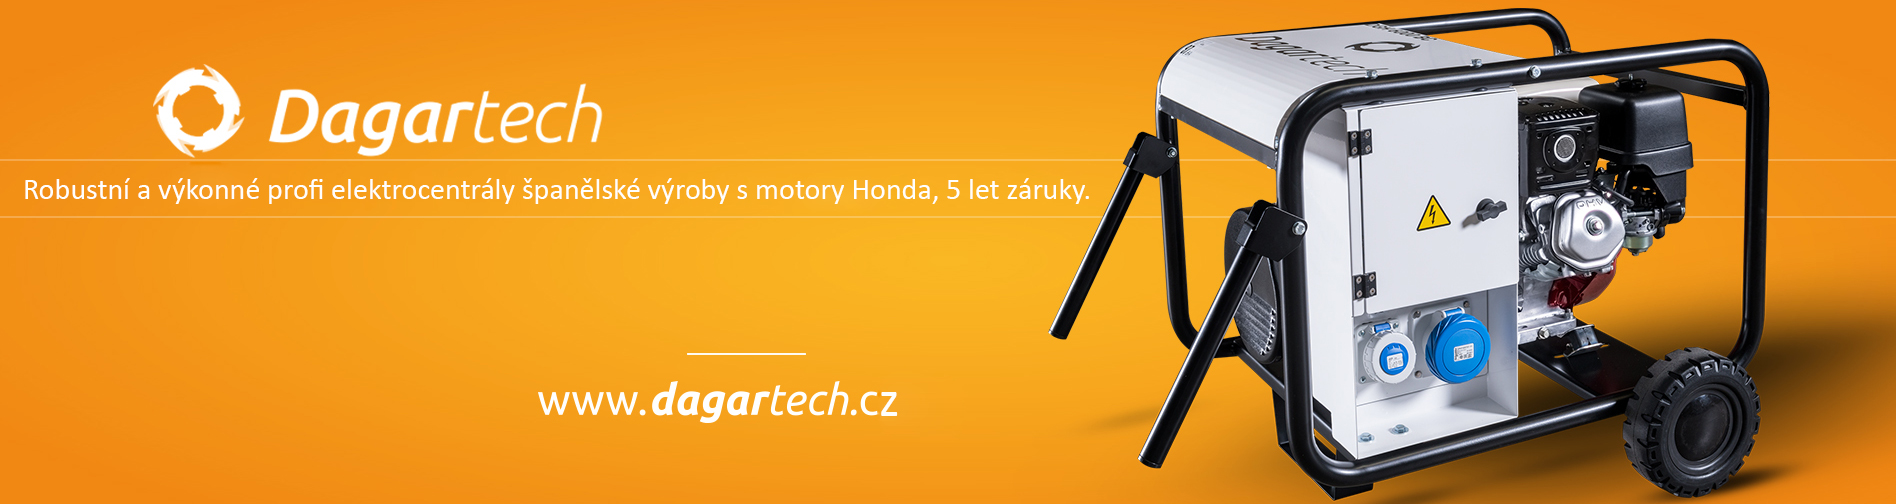 dagartech.cz - Profesionální elektrocentrály s motorem Honda